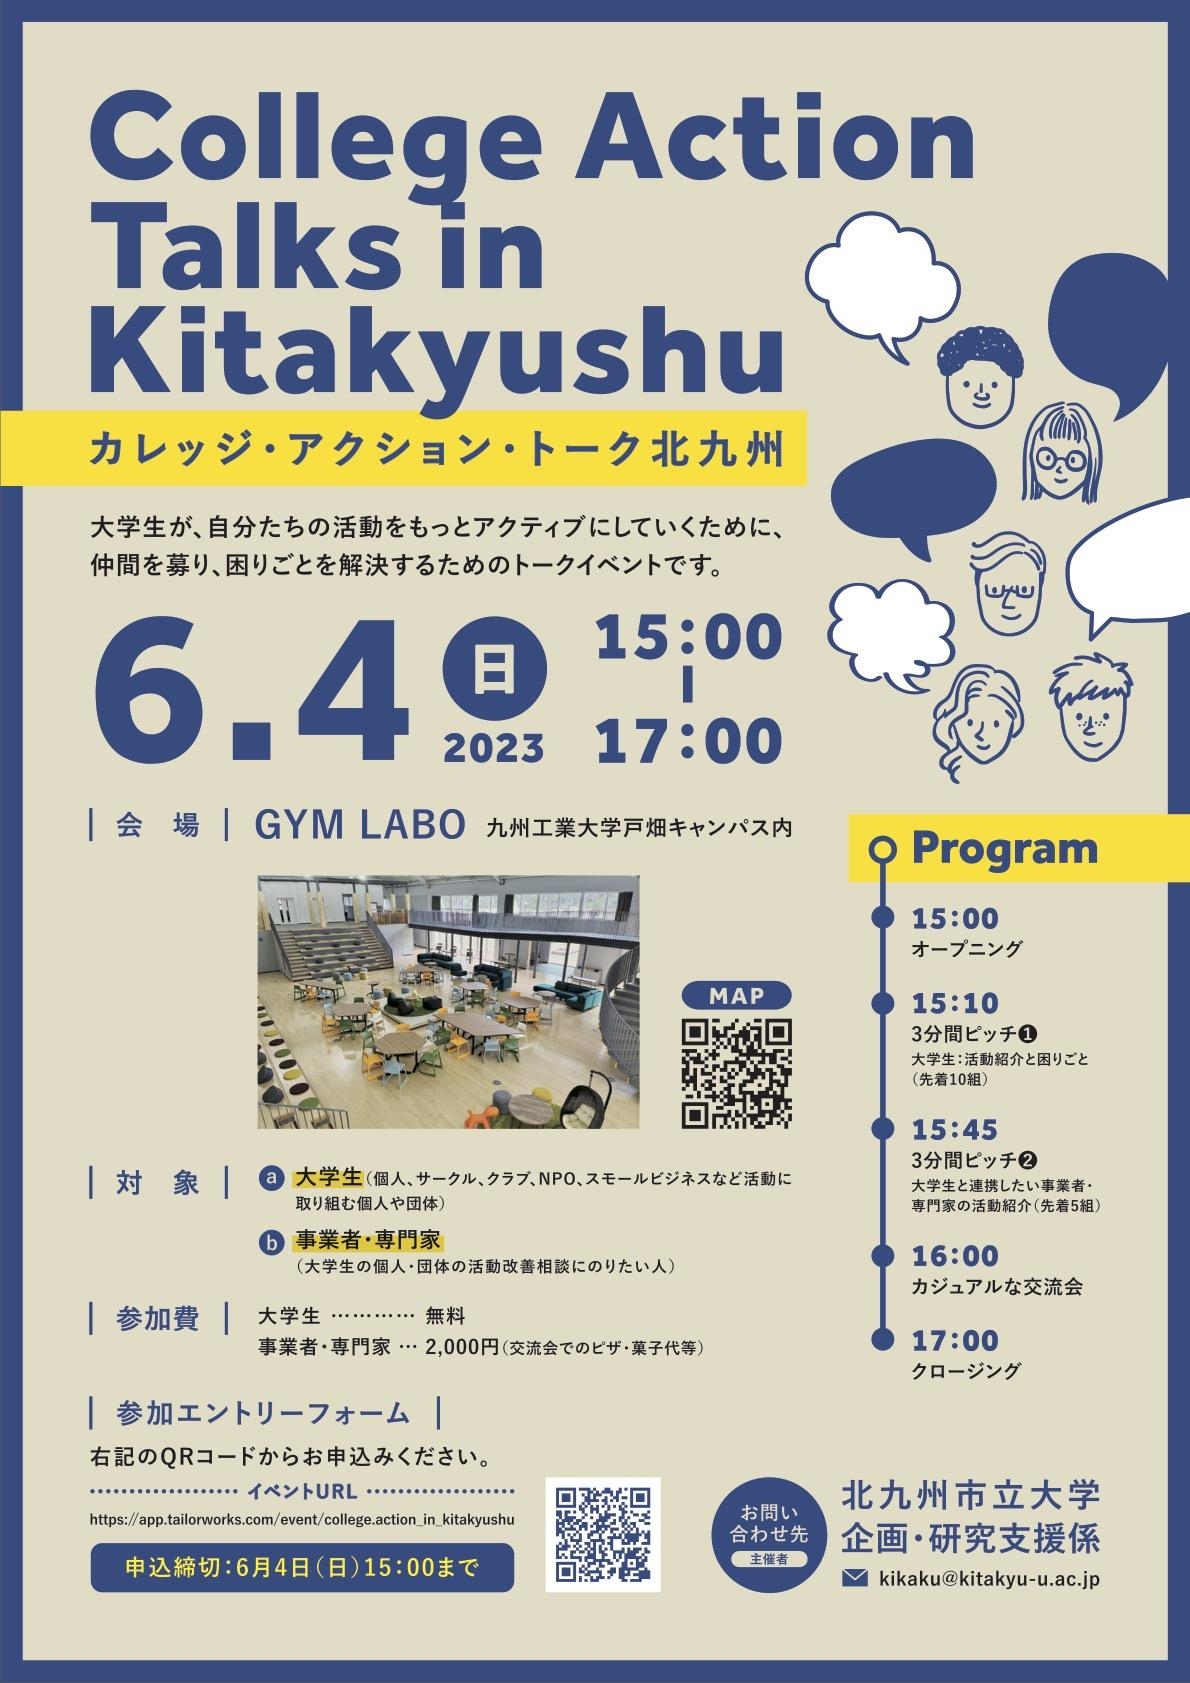 College Action Talks in Kitakyushu広告チラシ.jpg